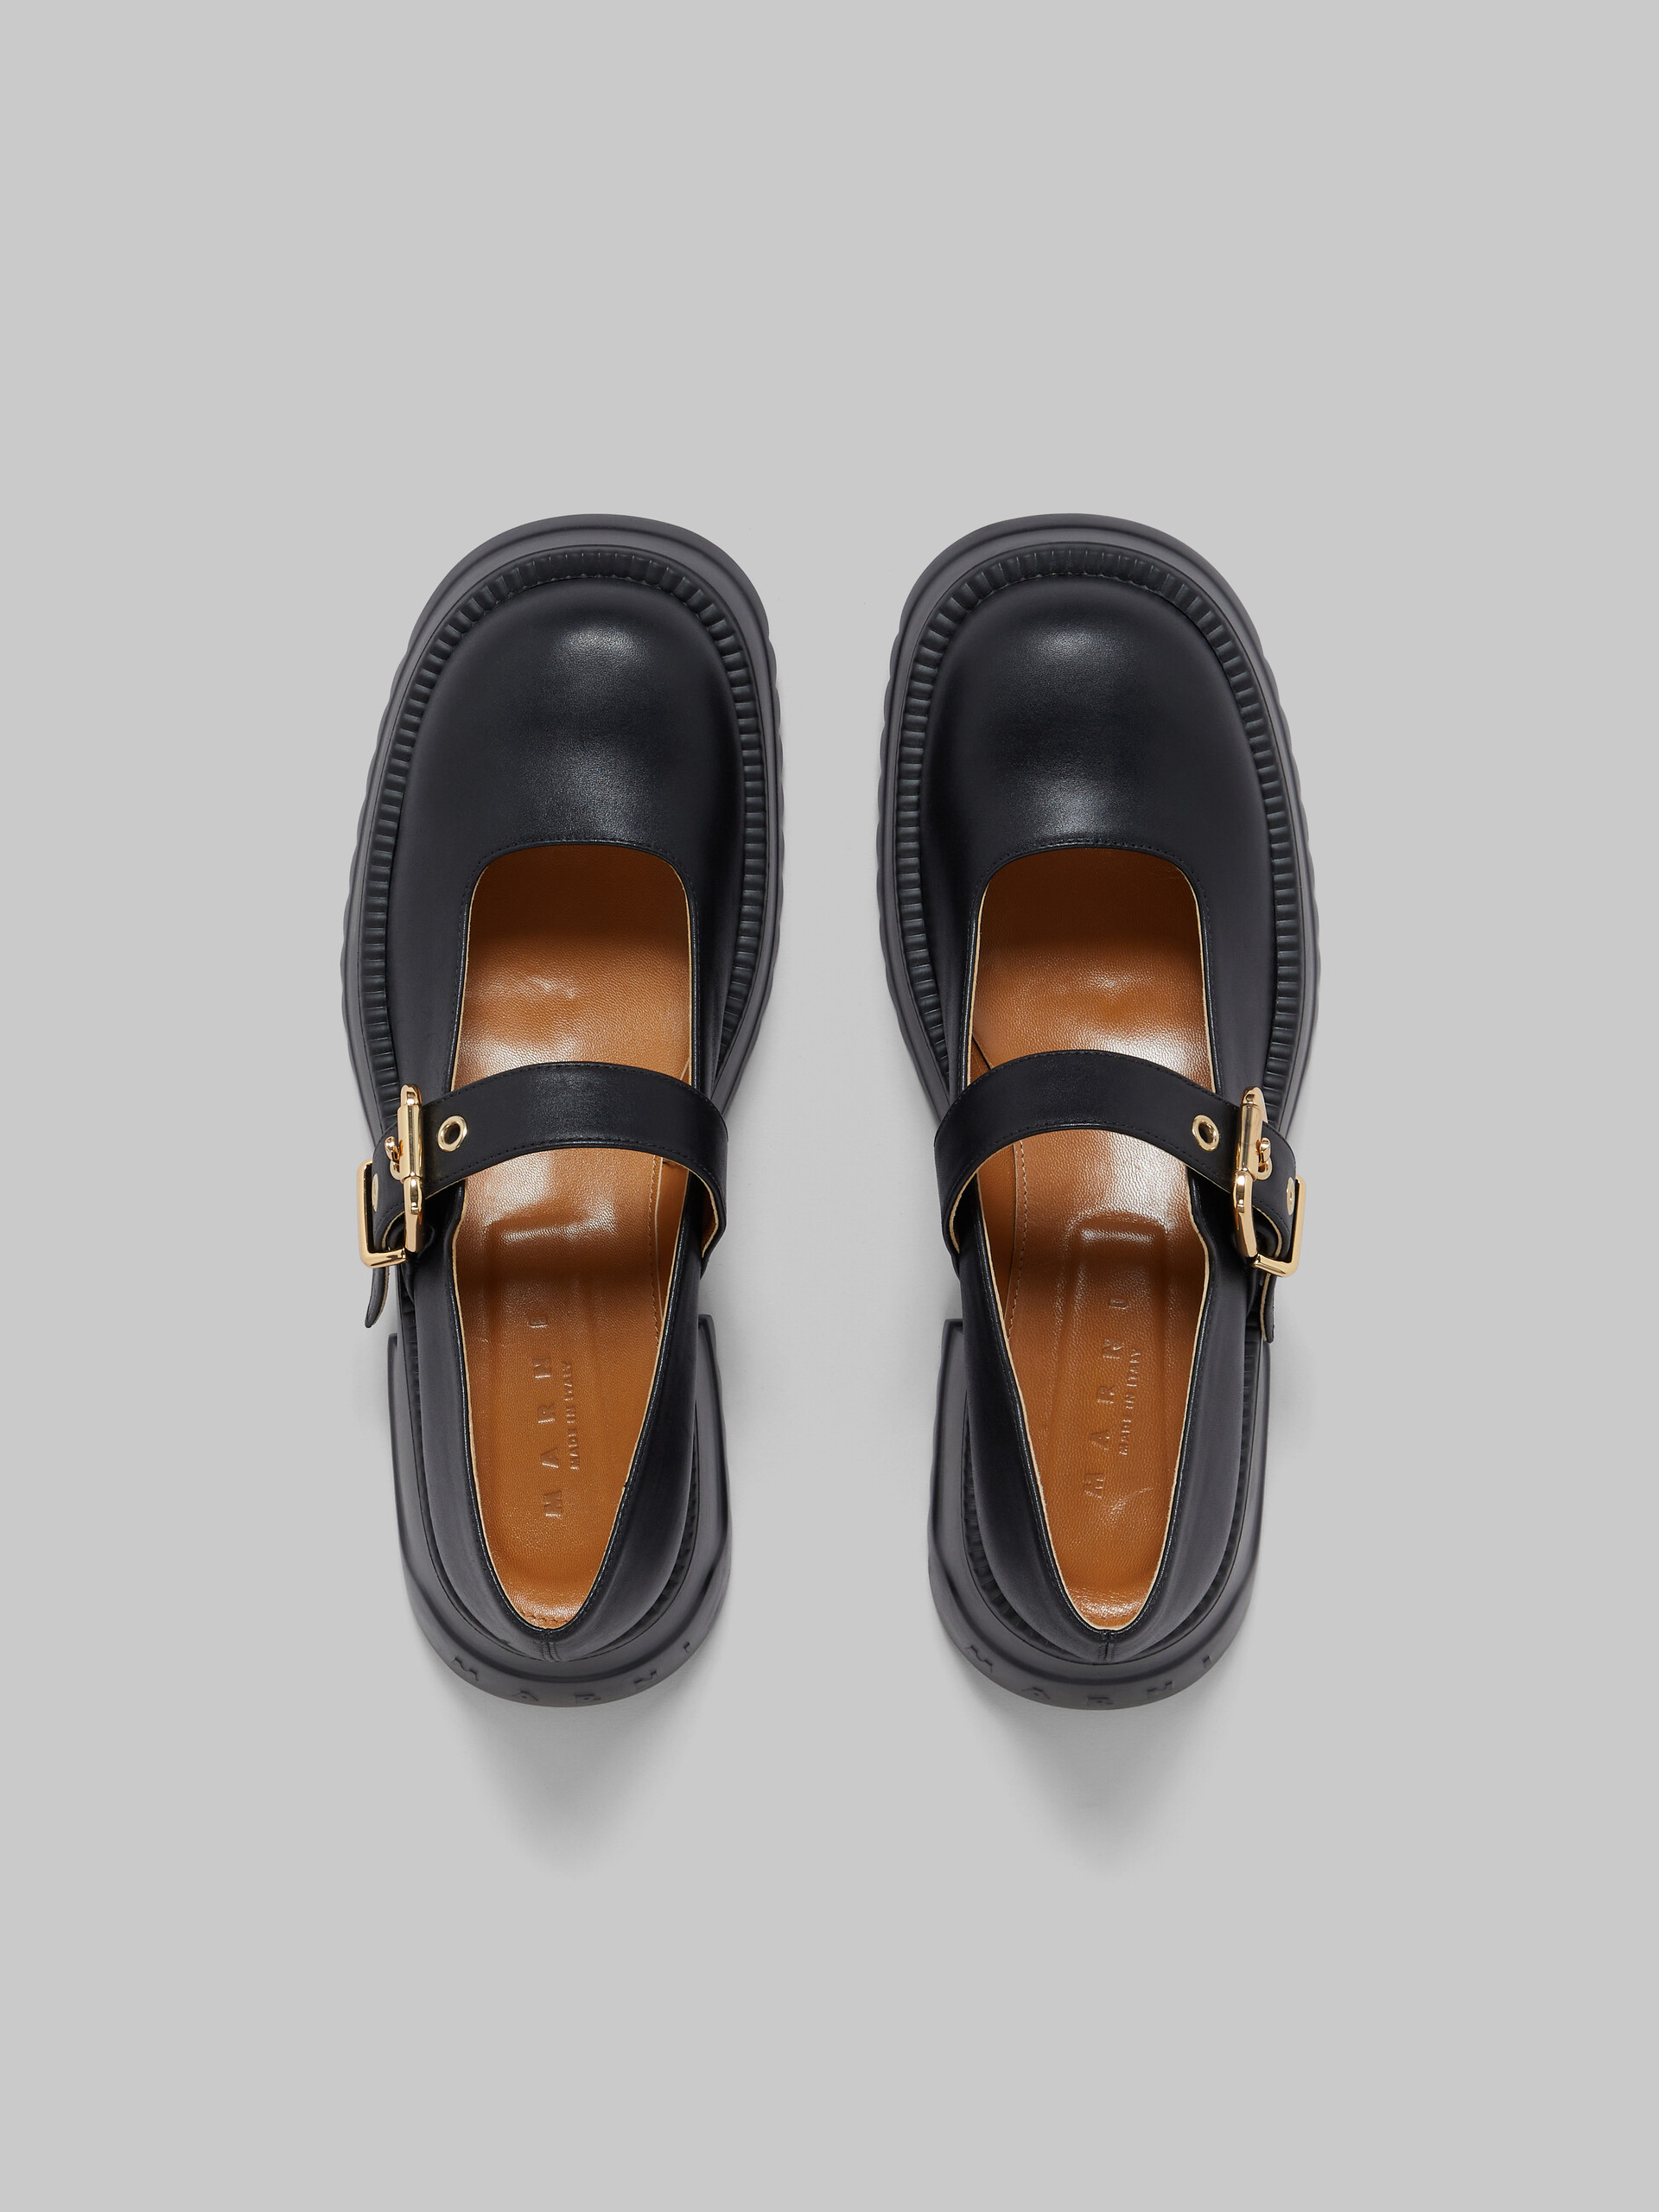 Zapatos estilo Mary Jane de piel negra con suela de plataforma - Sneakers - Image 4